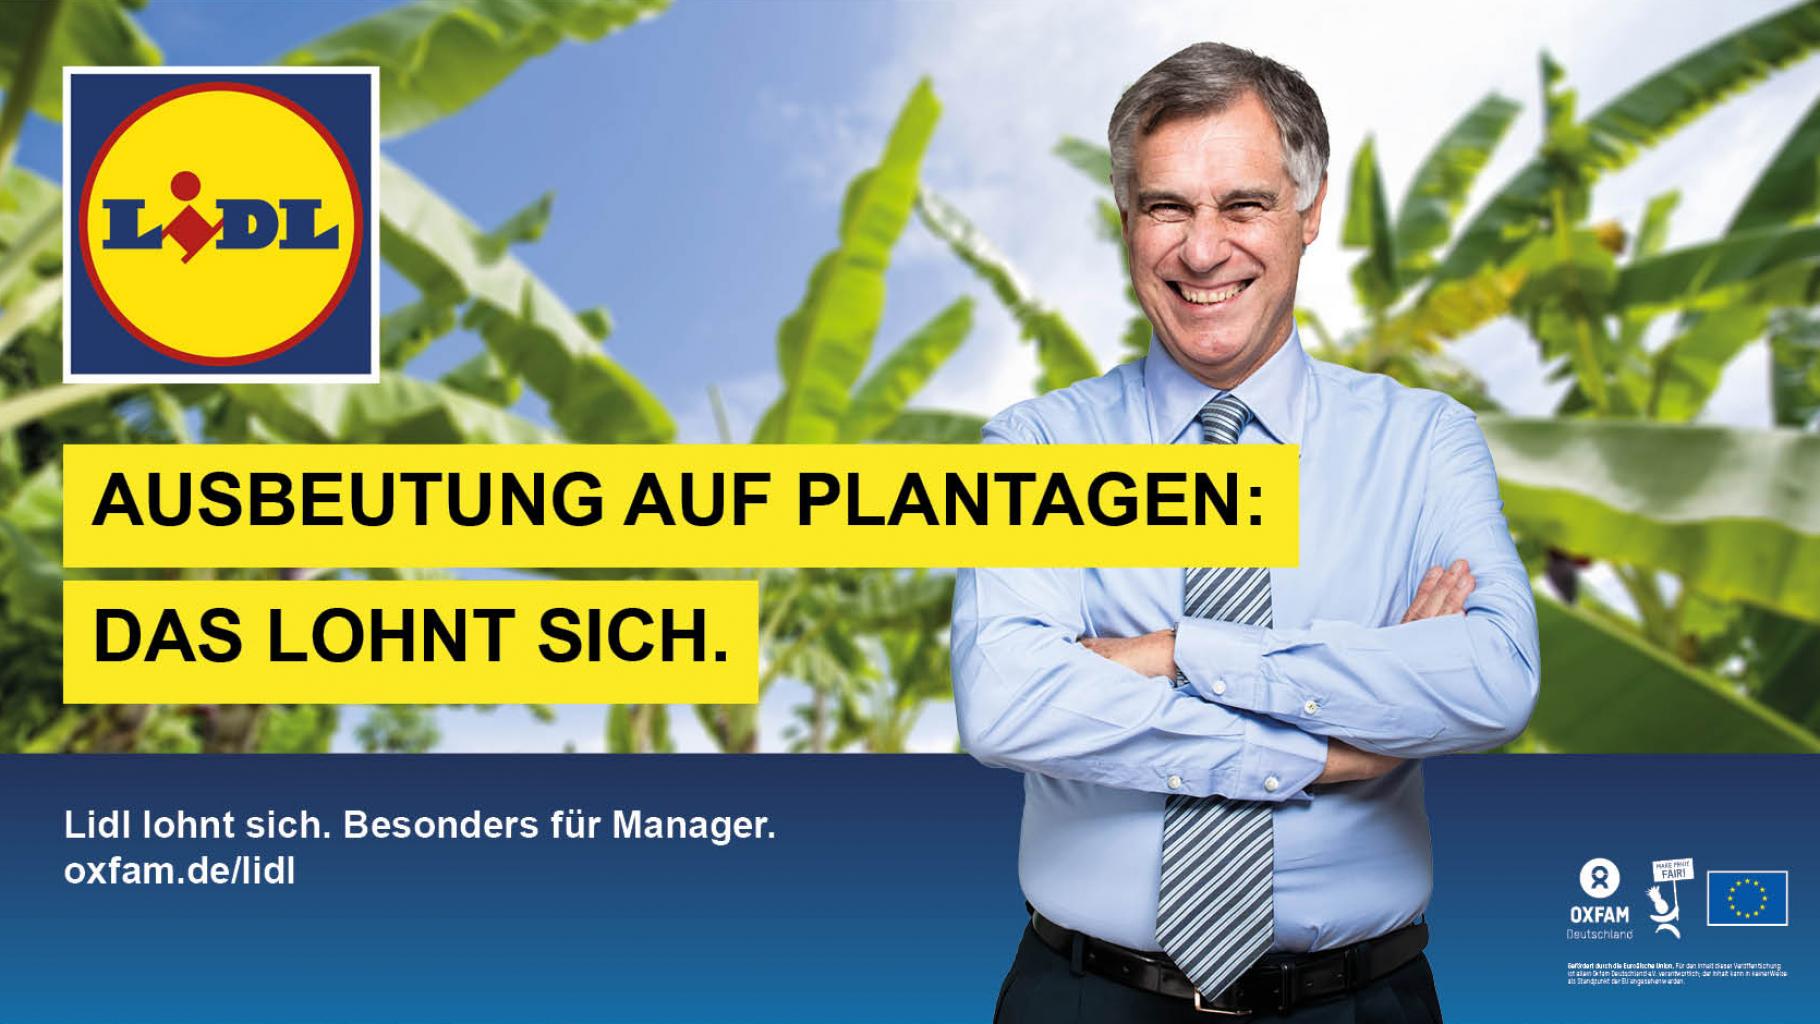 Ausbeutung auf Plantagen: Das lohnt sich. Lidl lohnt sich. Besonders für Manager. oxfam.de/lidl